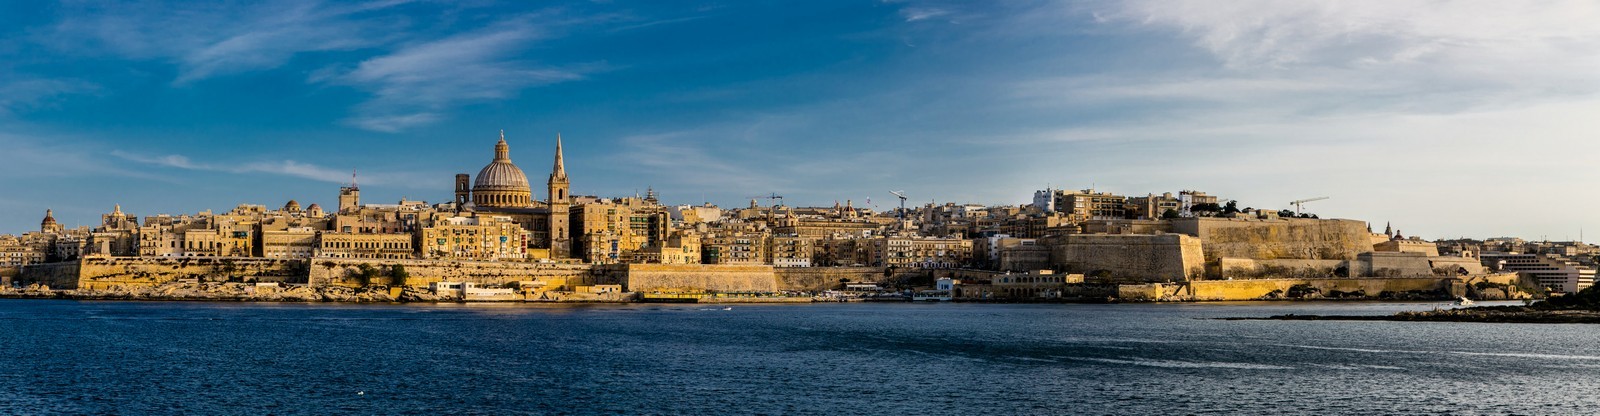 Valletta sea front 2